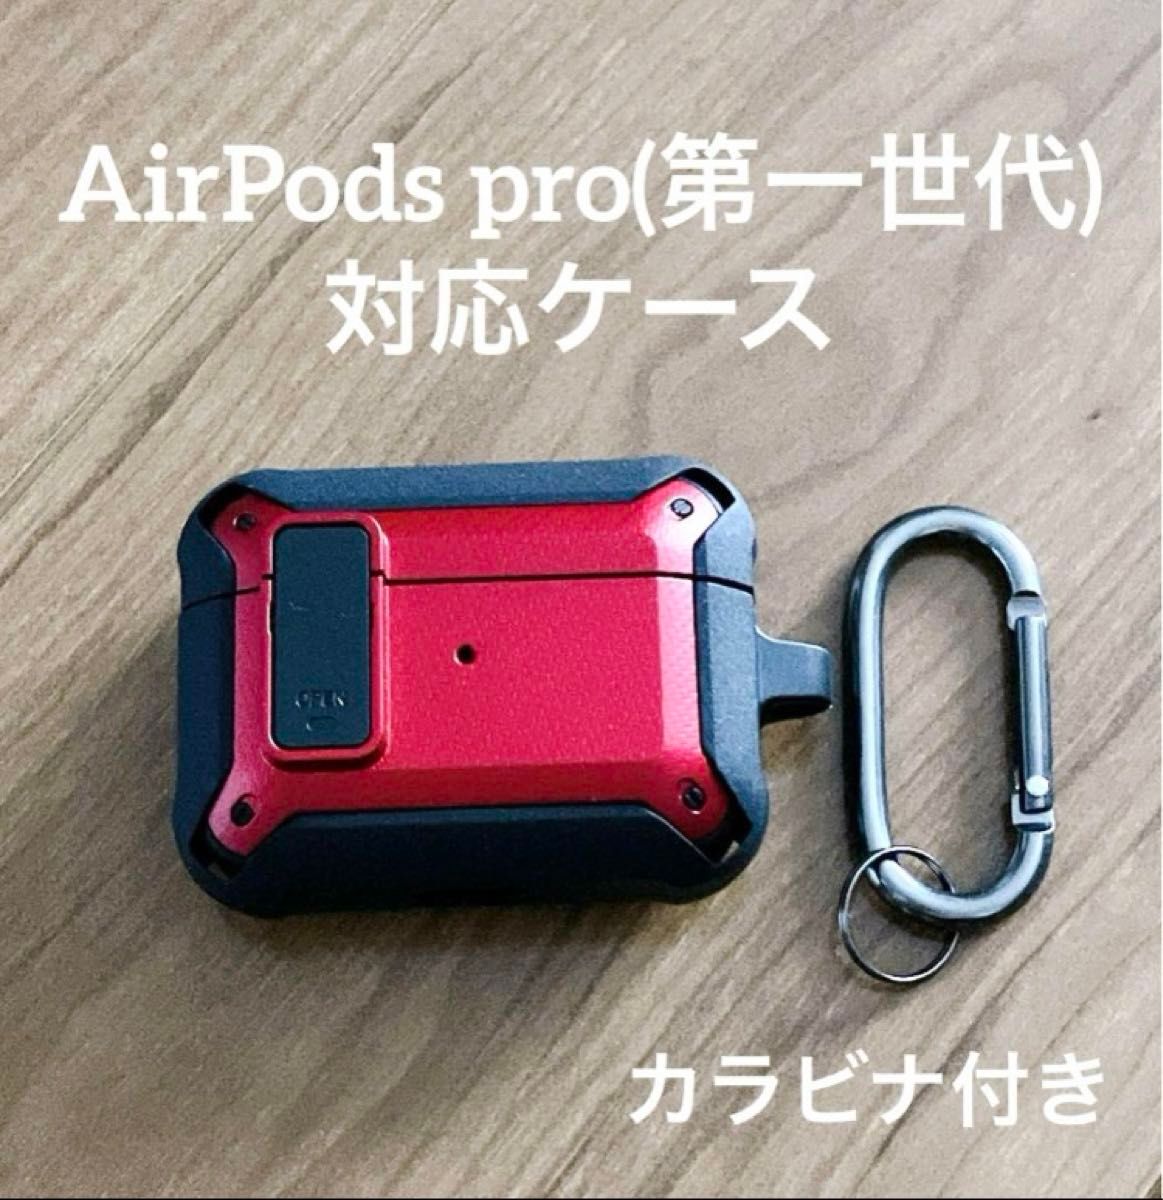 AirPods pro (第一世代) ケース 保護カバー レッド ブラック